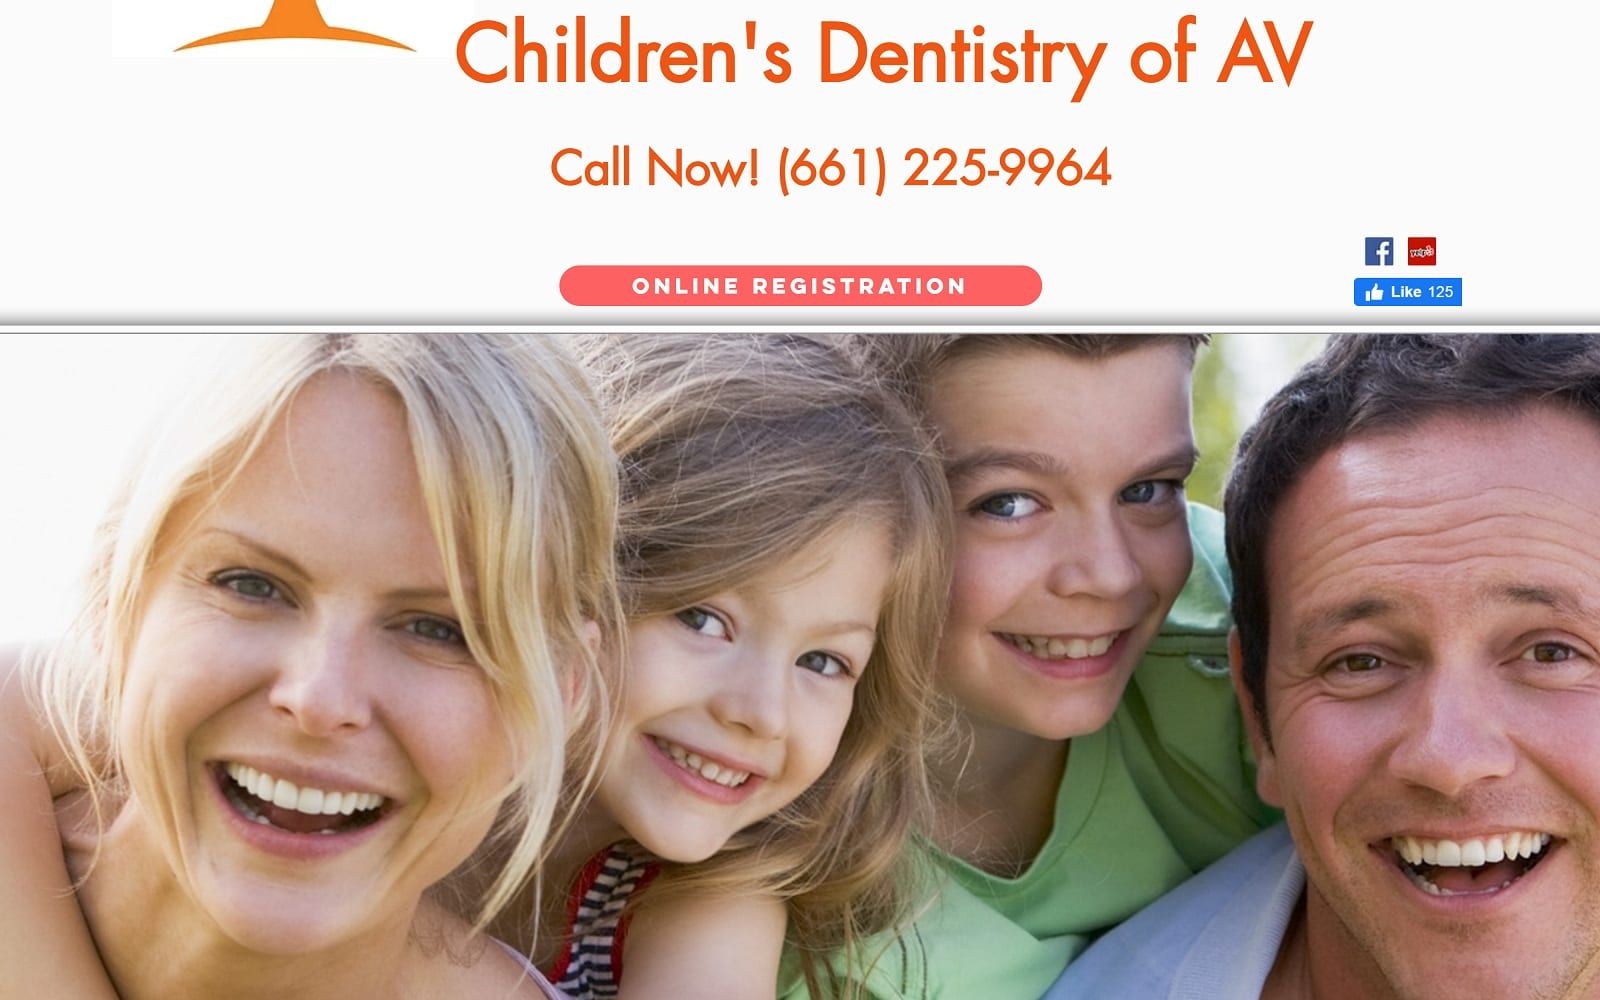 The screenshot of children's dentistry of av childrensdentistryofav. Com website